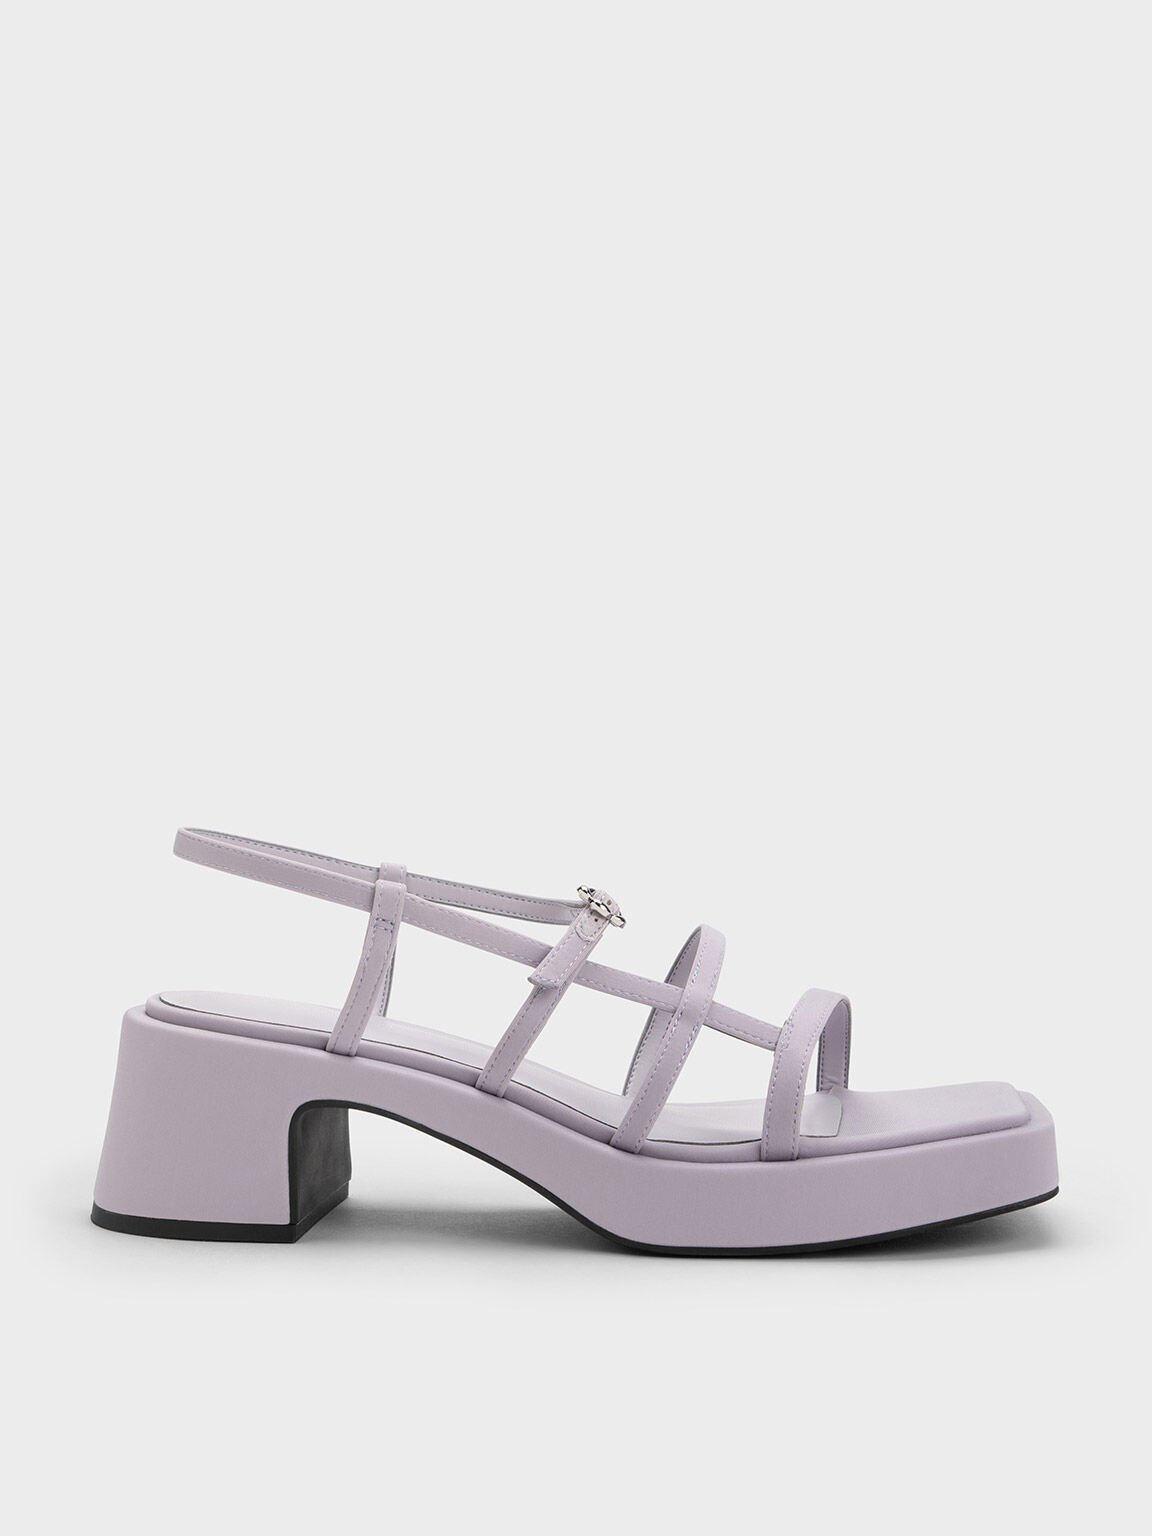 小花釦厚底粗跟涼鞋, 紫丁香色, hi-res